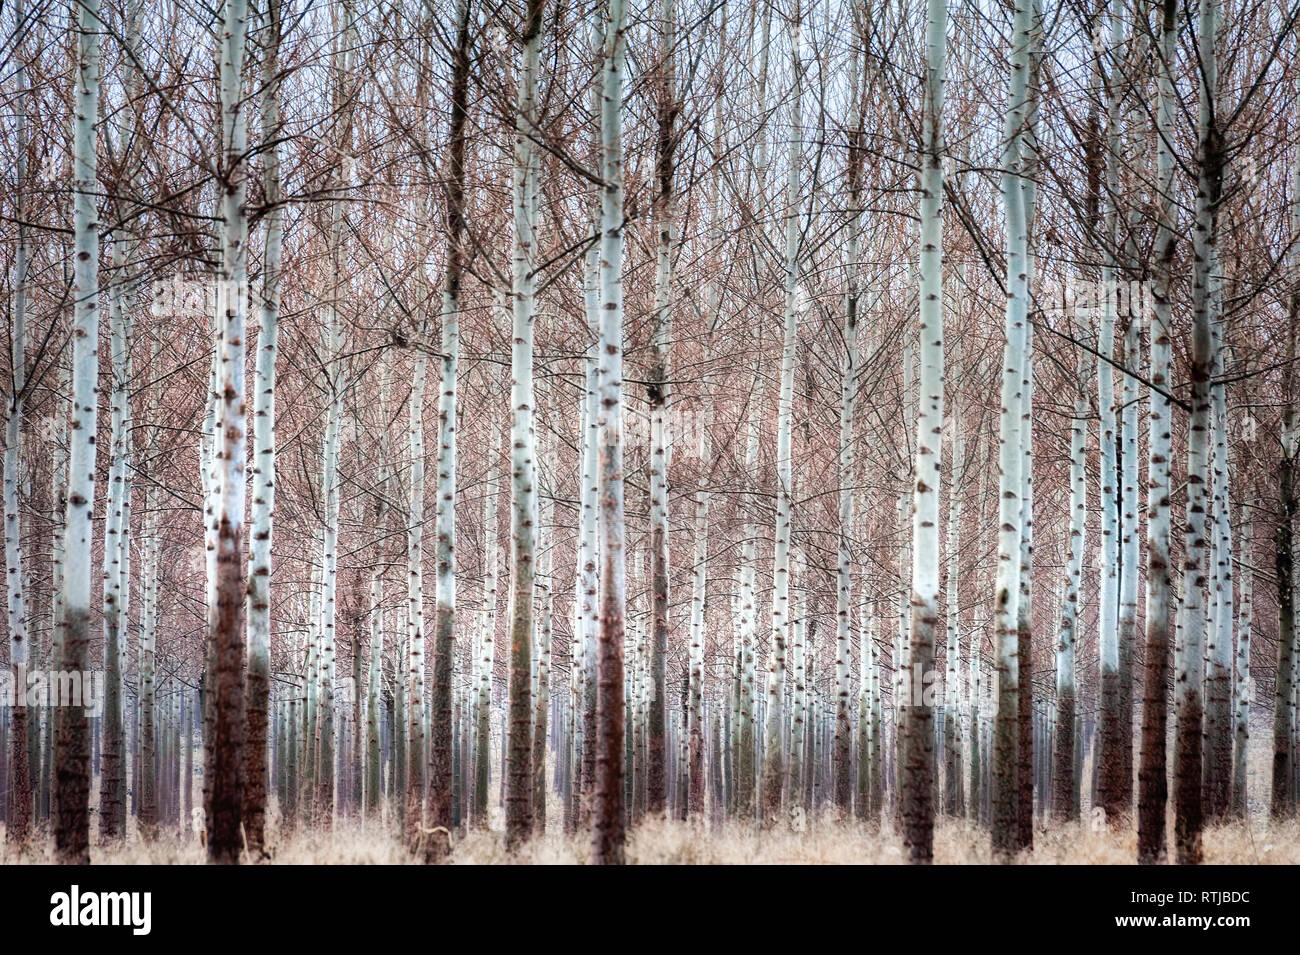 Für die Ernte angebaut, dieses gepflegte Wald von Papier Birke Bäume ohne Blätter erhöht ihre markanten weißen Rinde Amtsleitungen. Stockfoto